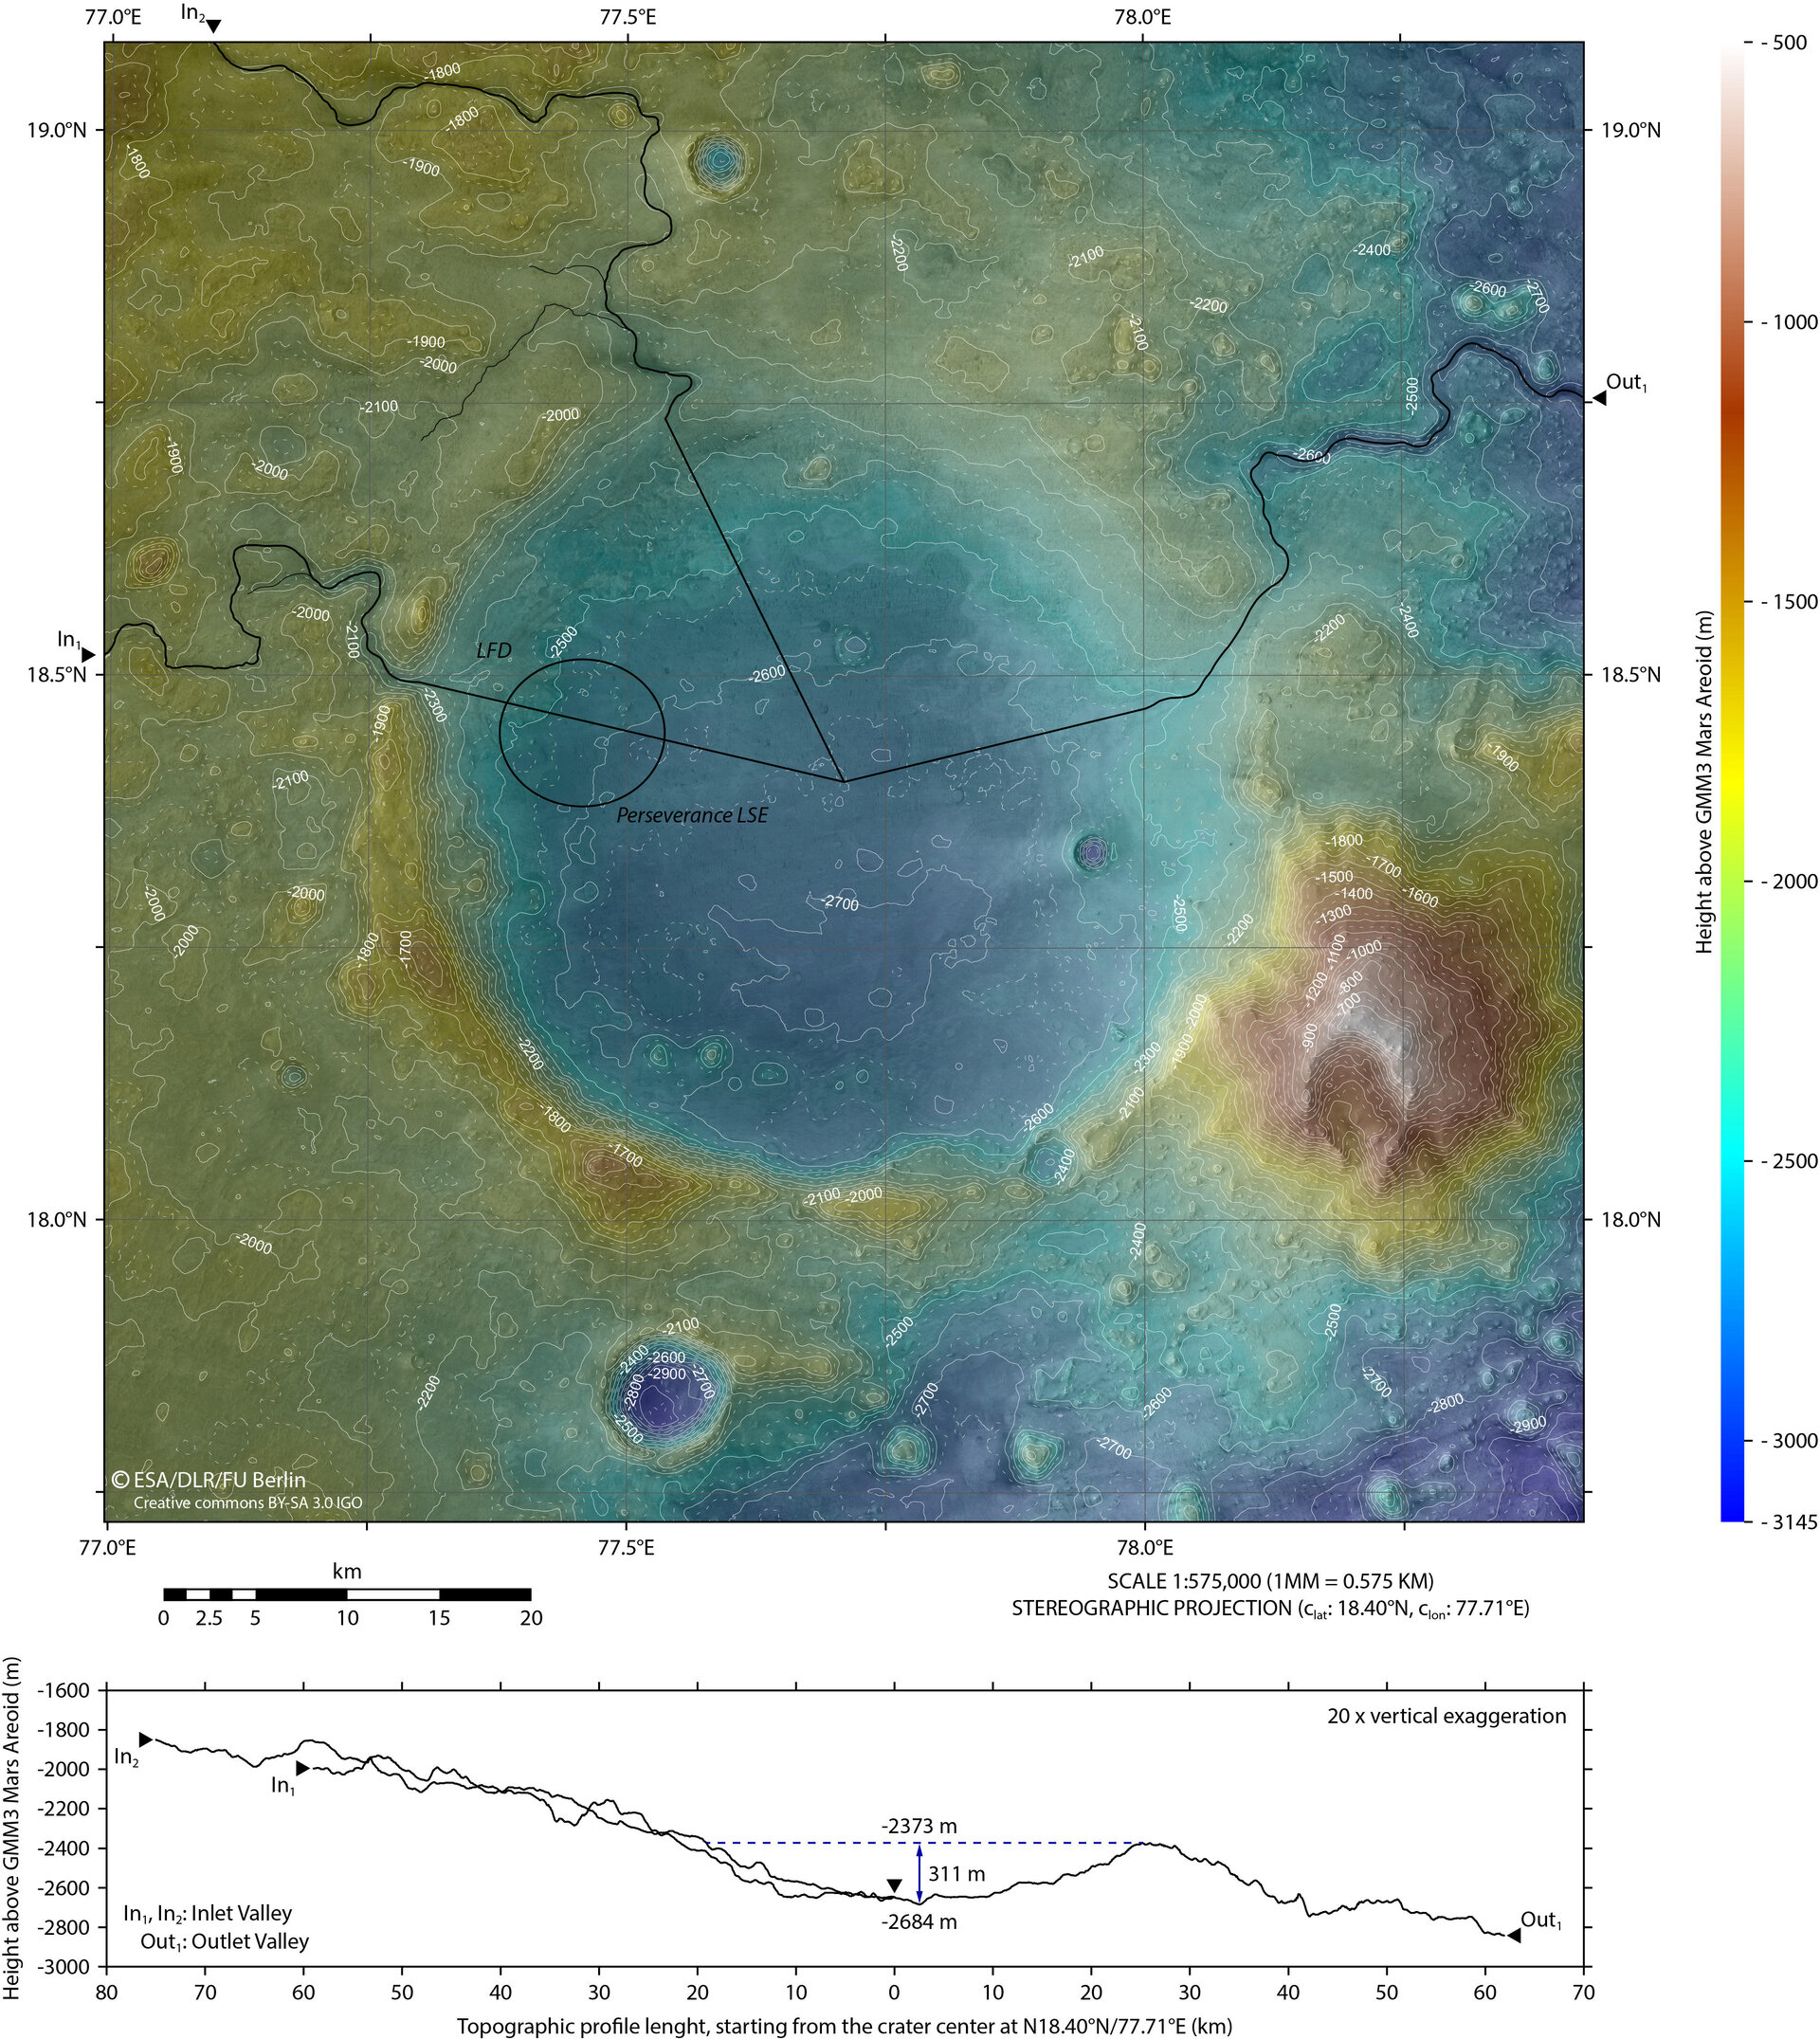 New topographic map of Jezero Crater – Mars 2020’s future home